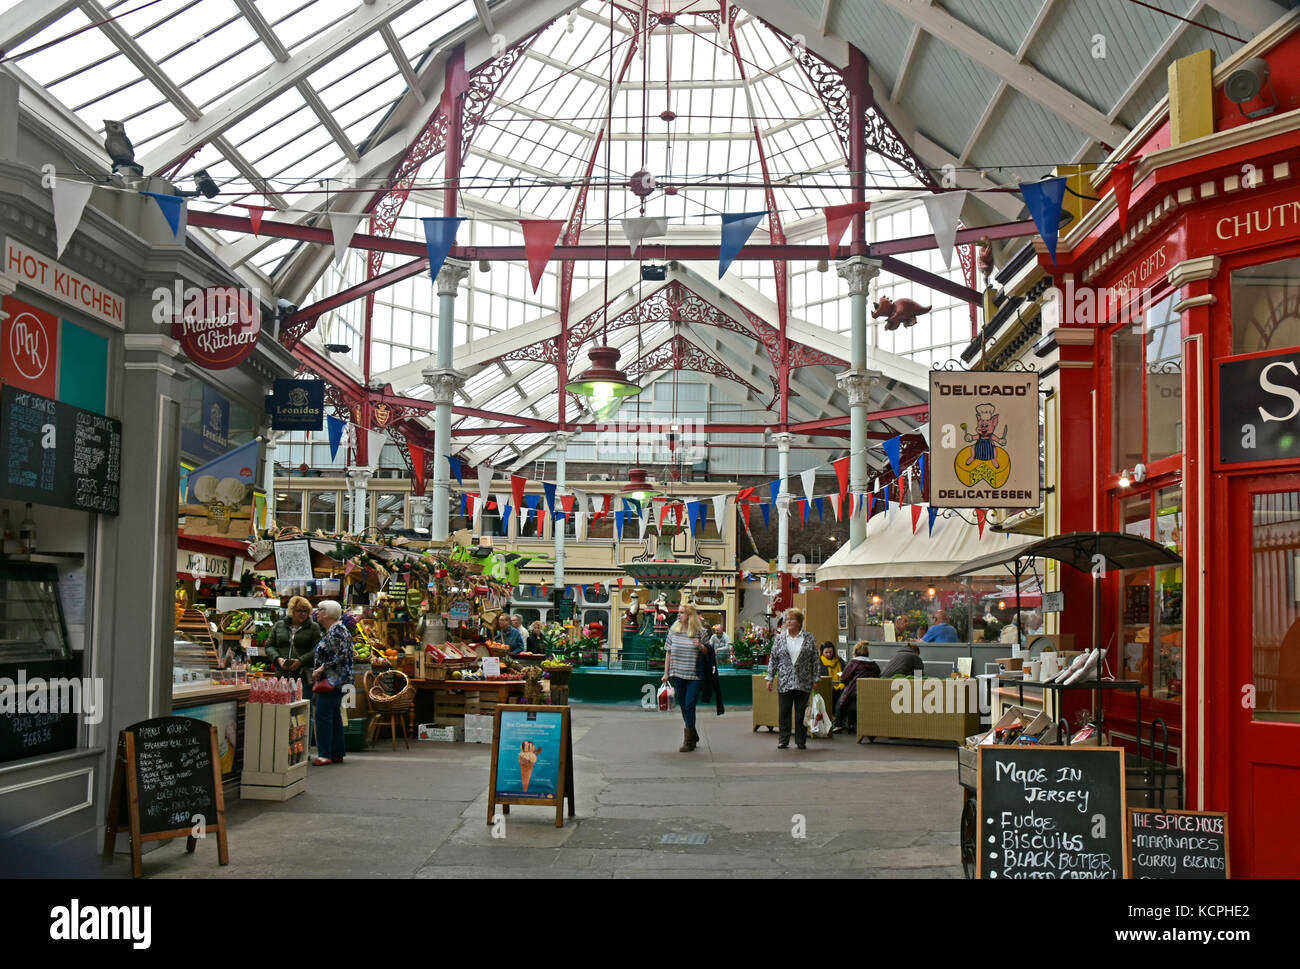 Il mercato centrale - st helier - jersey nelle isole del Canale - aperto 1882 - colorata -victorian - Fontana - deve vedere attrazione turistica Foto Stock